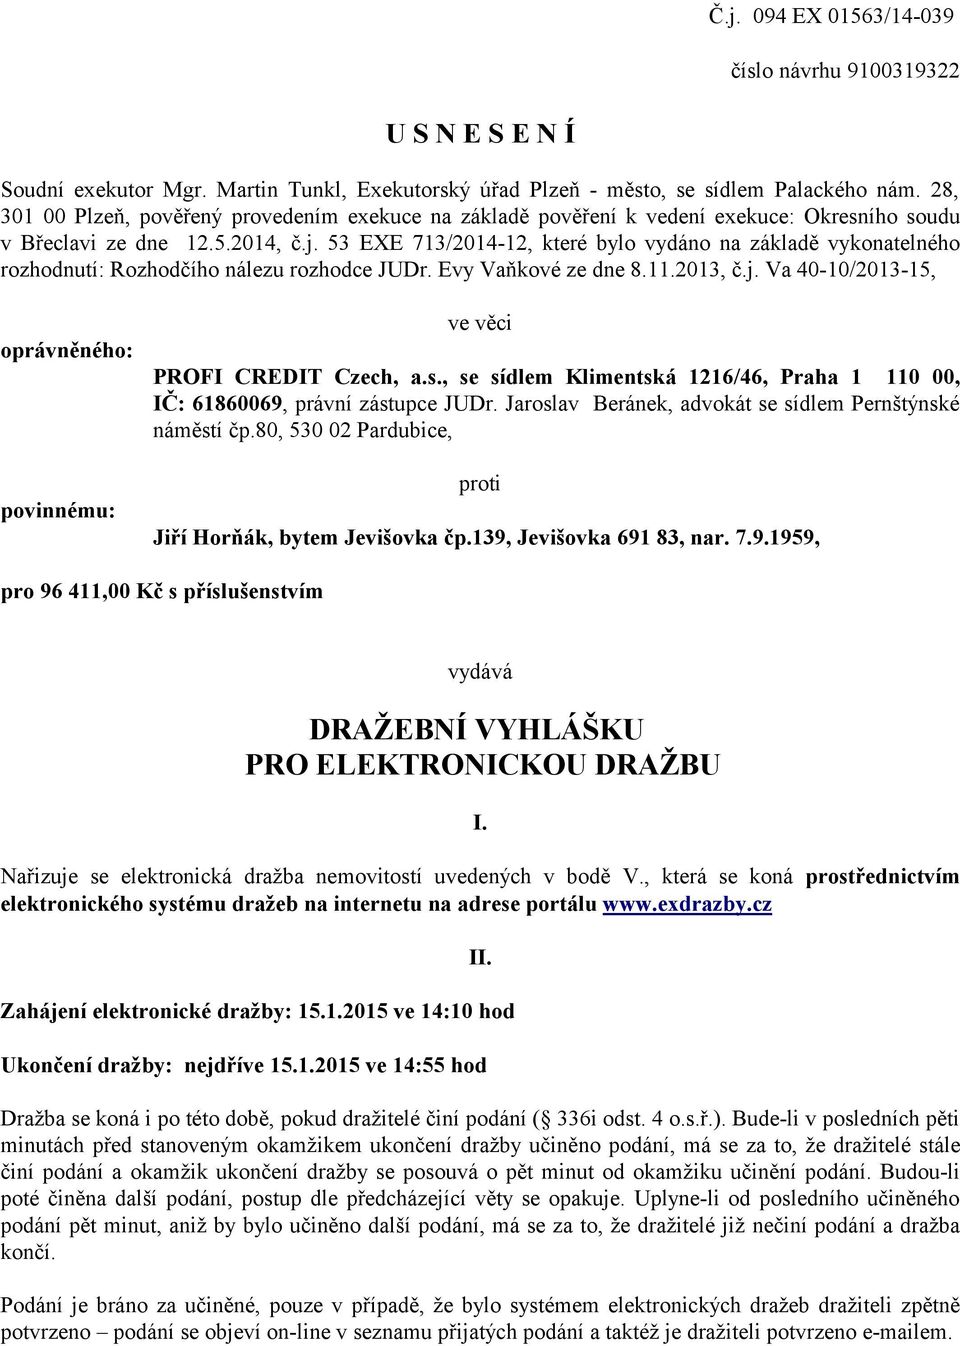 53 EXE 713/2014-12, které bylo vydáno na základě vykonatelného rozhodnutí: Rozhodčího nálezu rozhodce JUDr. Evy Vaňkové ze dne 8.11.2013, č.j.